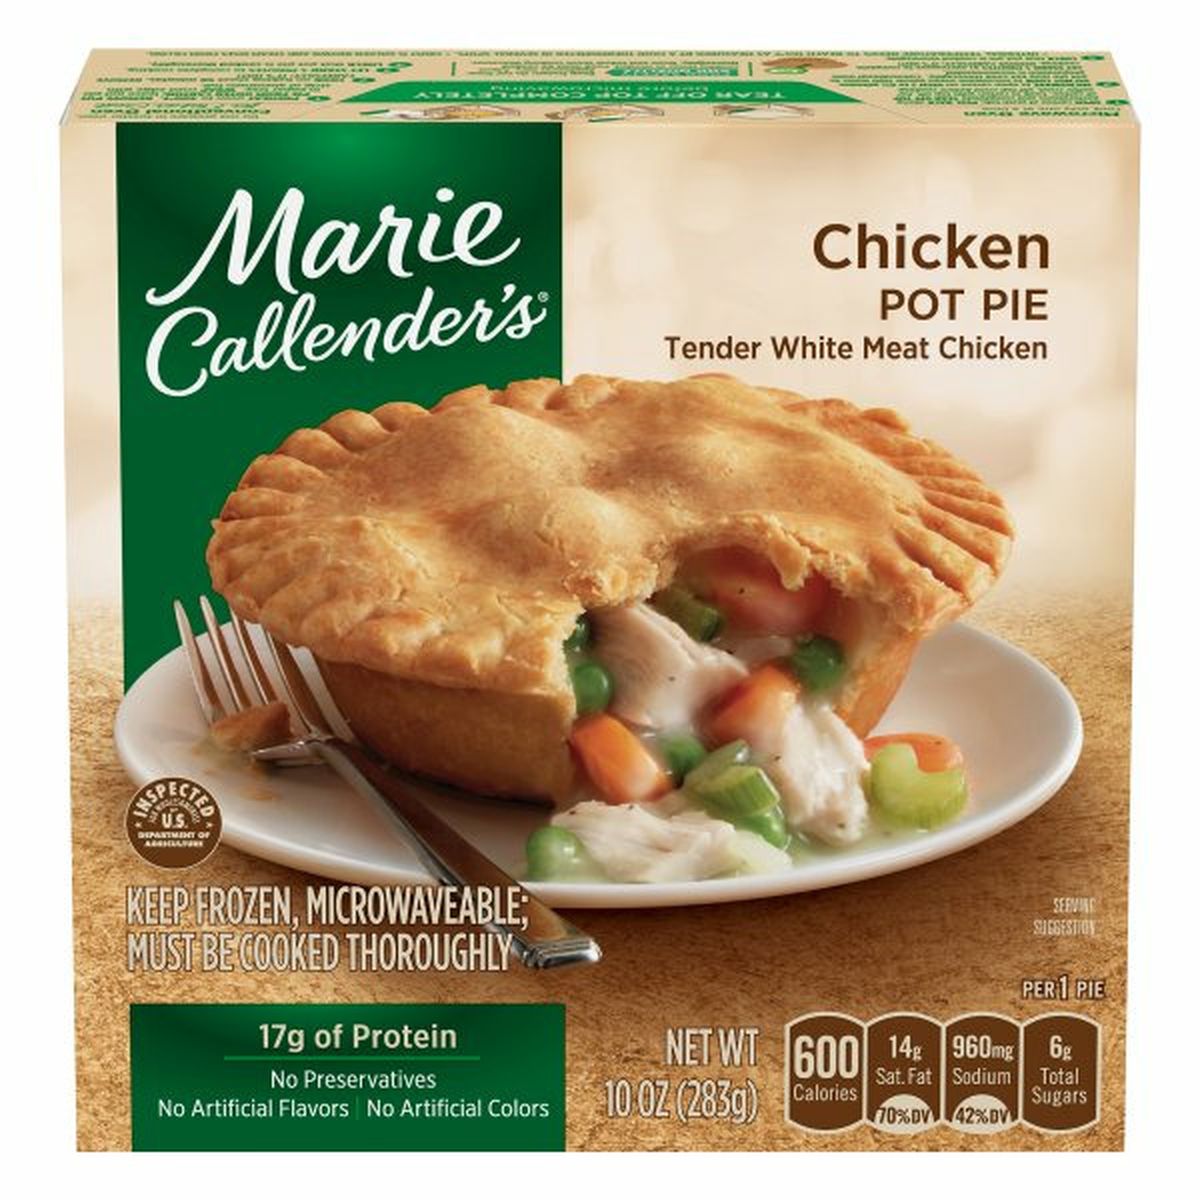 Calories in Marie Callender's Pot Pie, Chicken